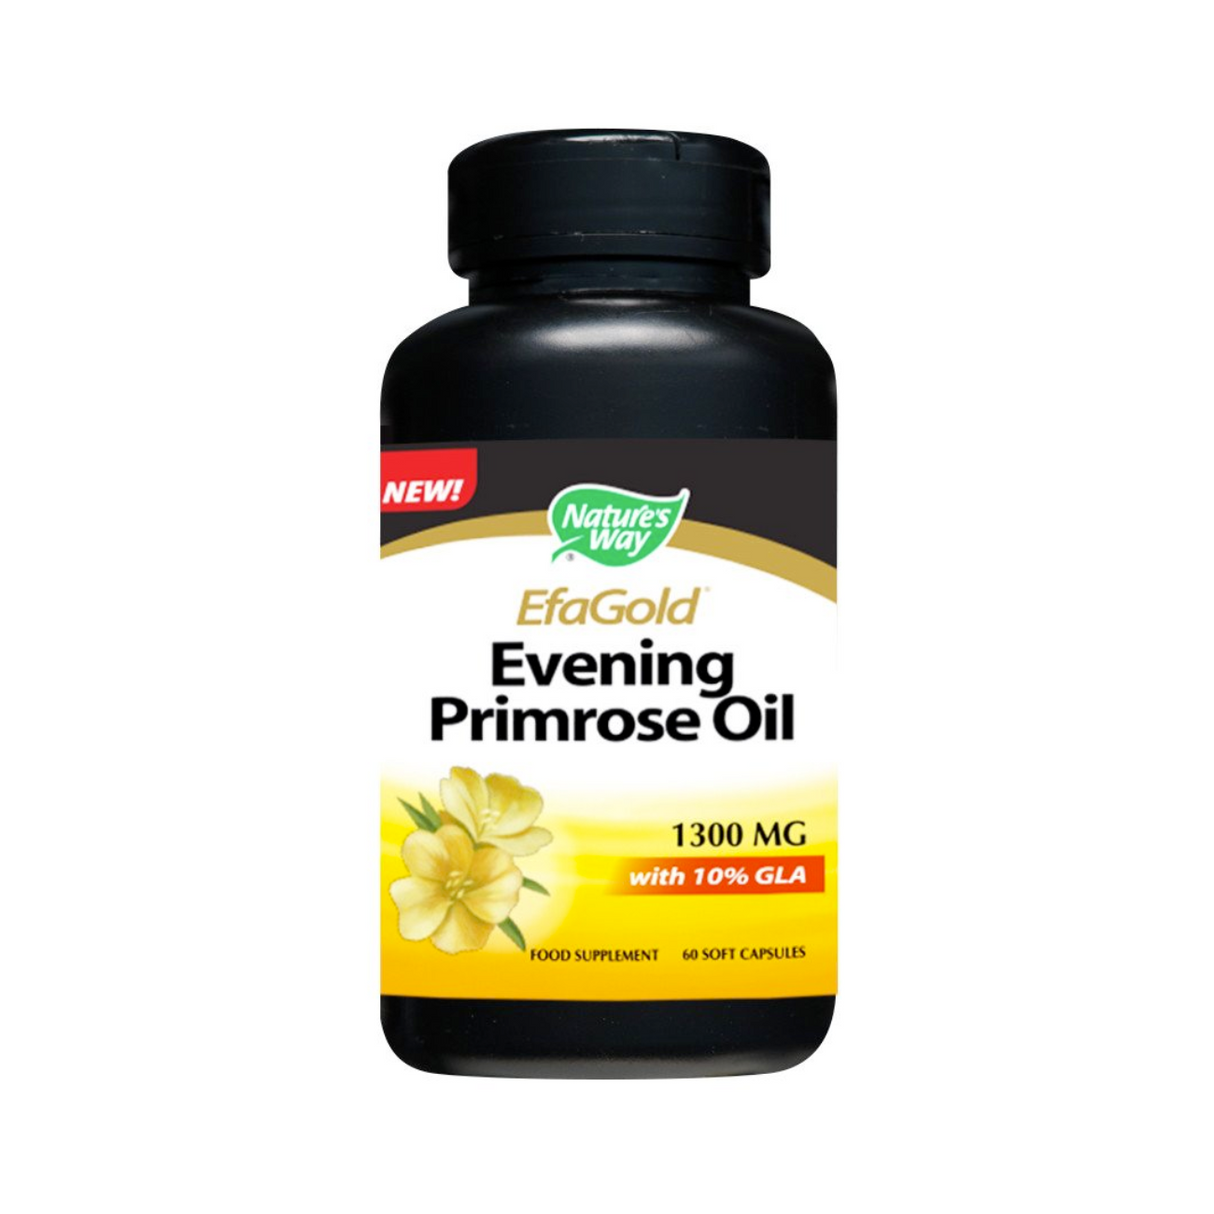 EfaGold Evening Primrose Oil 1,300 mg